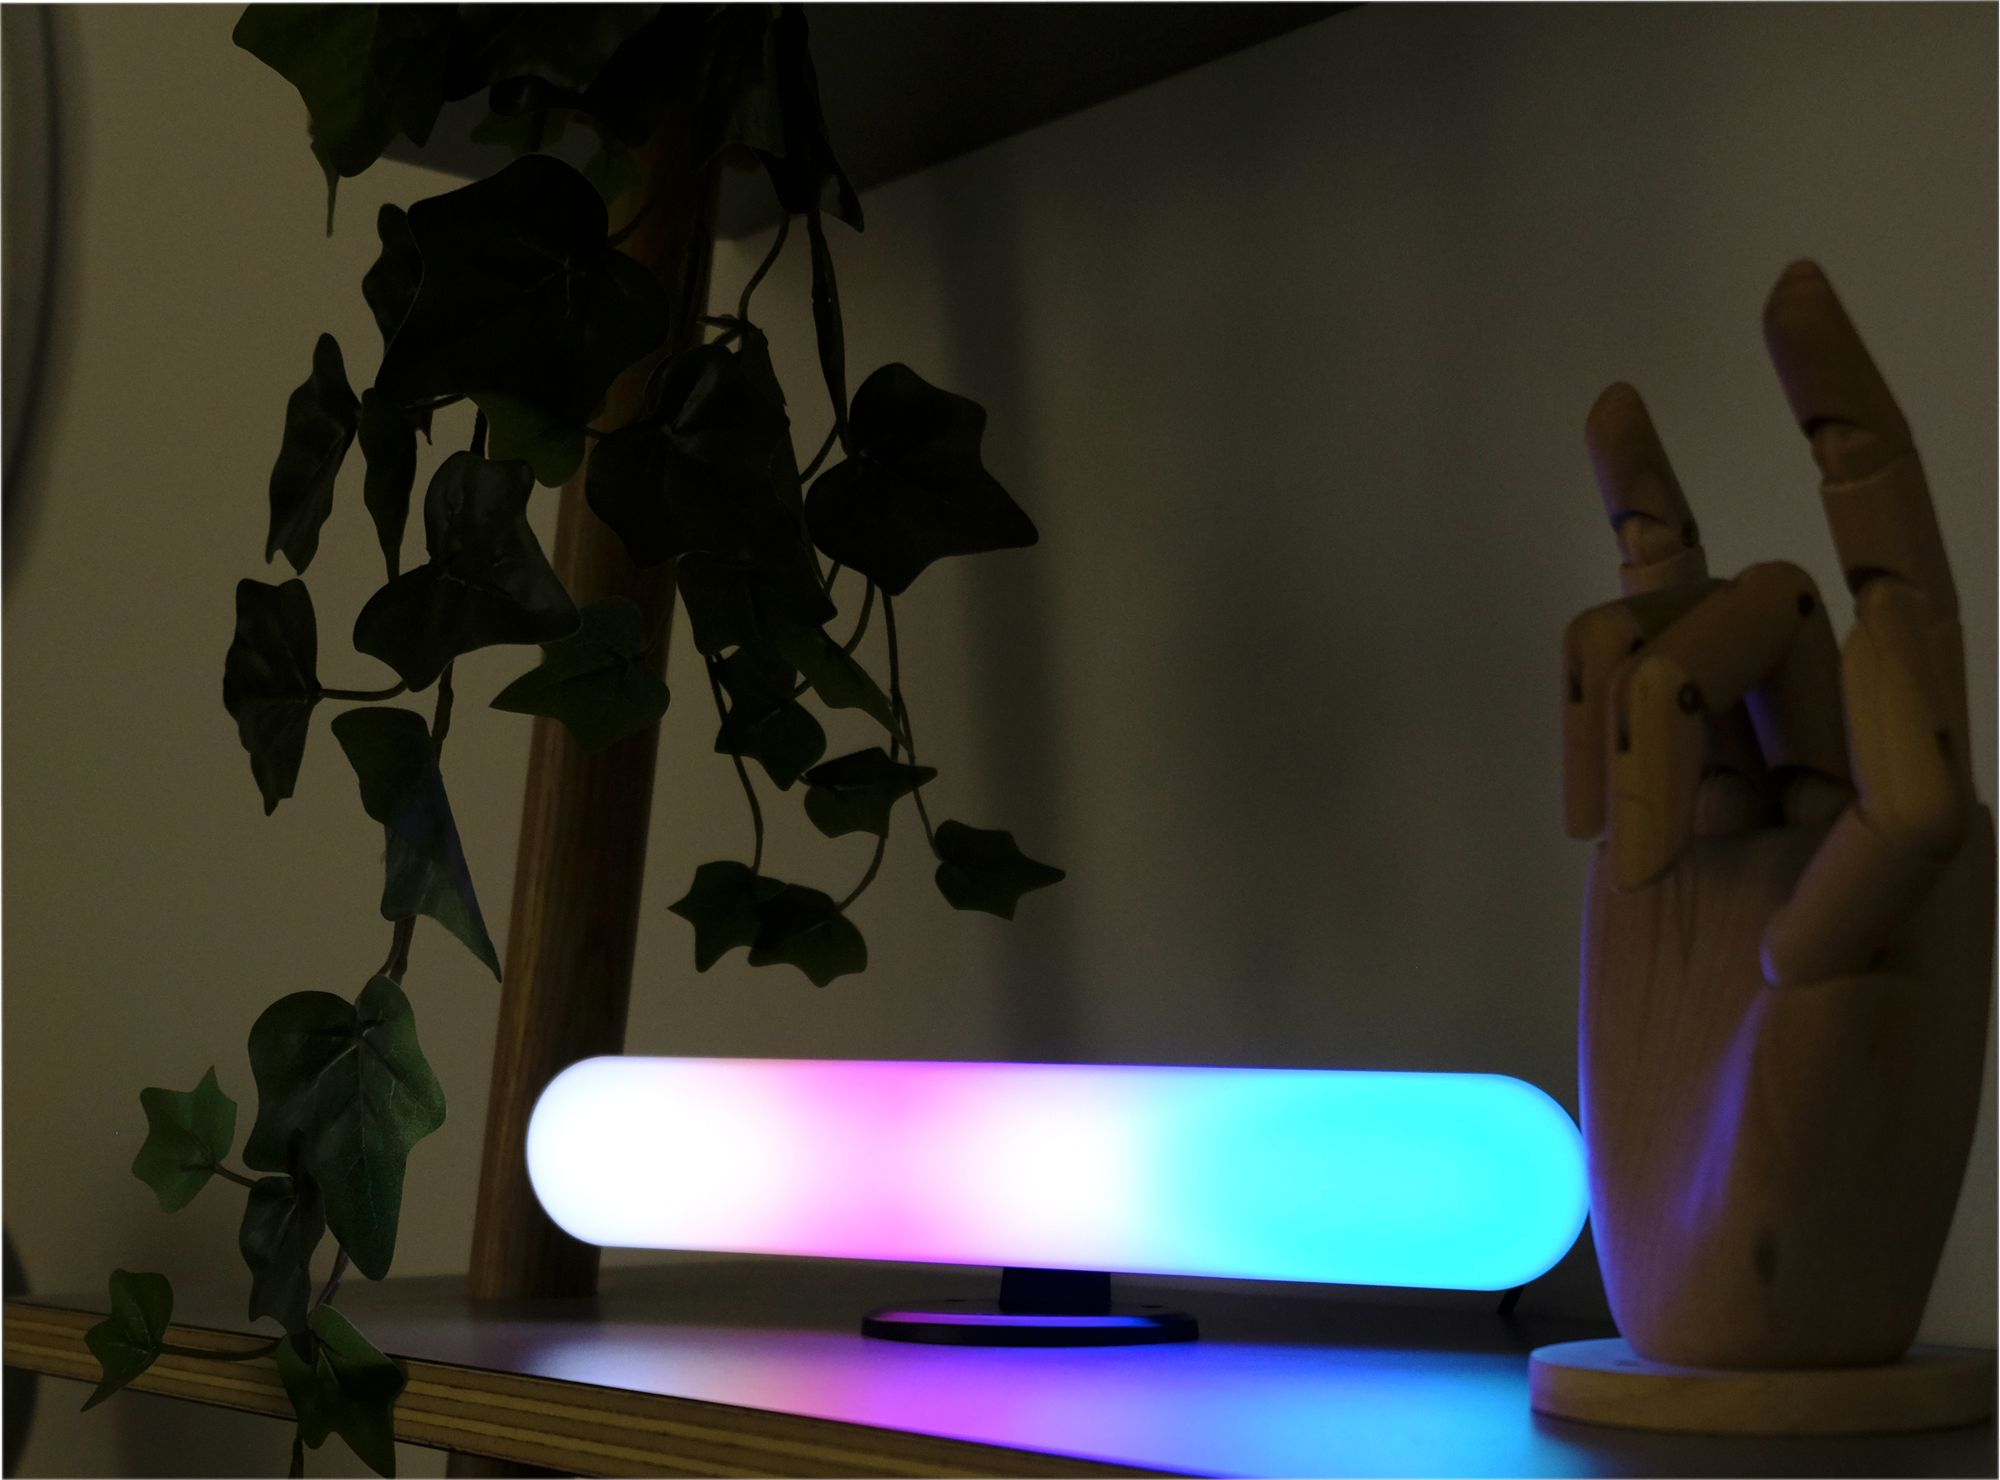 Megalight LED Lightbar Beleuchtung für TV, PC und Mobilar mit verschiedenen Farbmodi 2 Meter